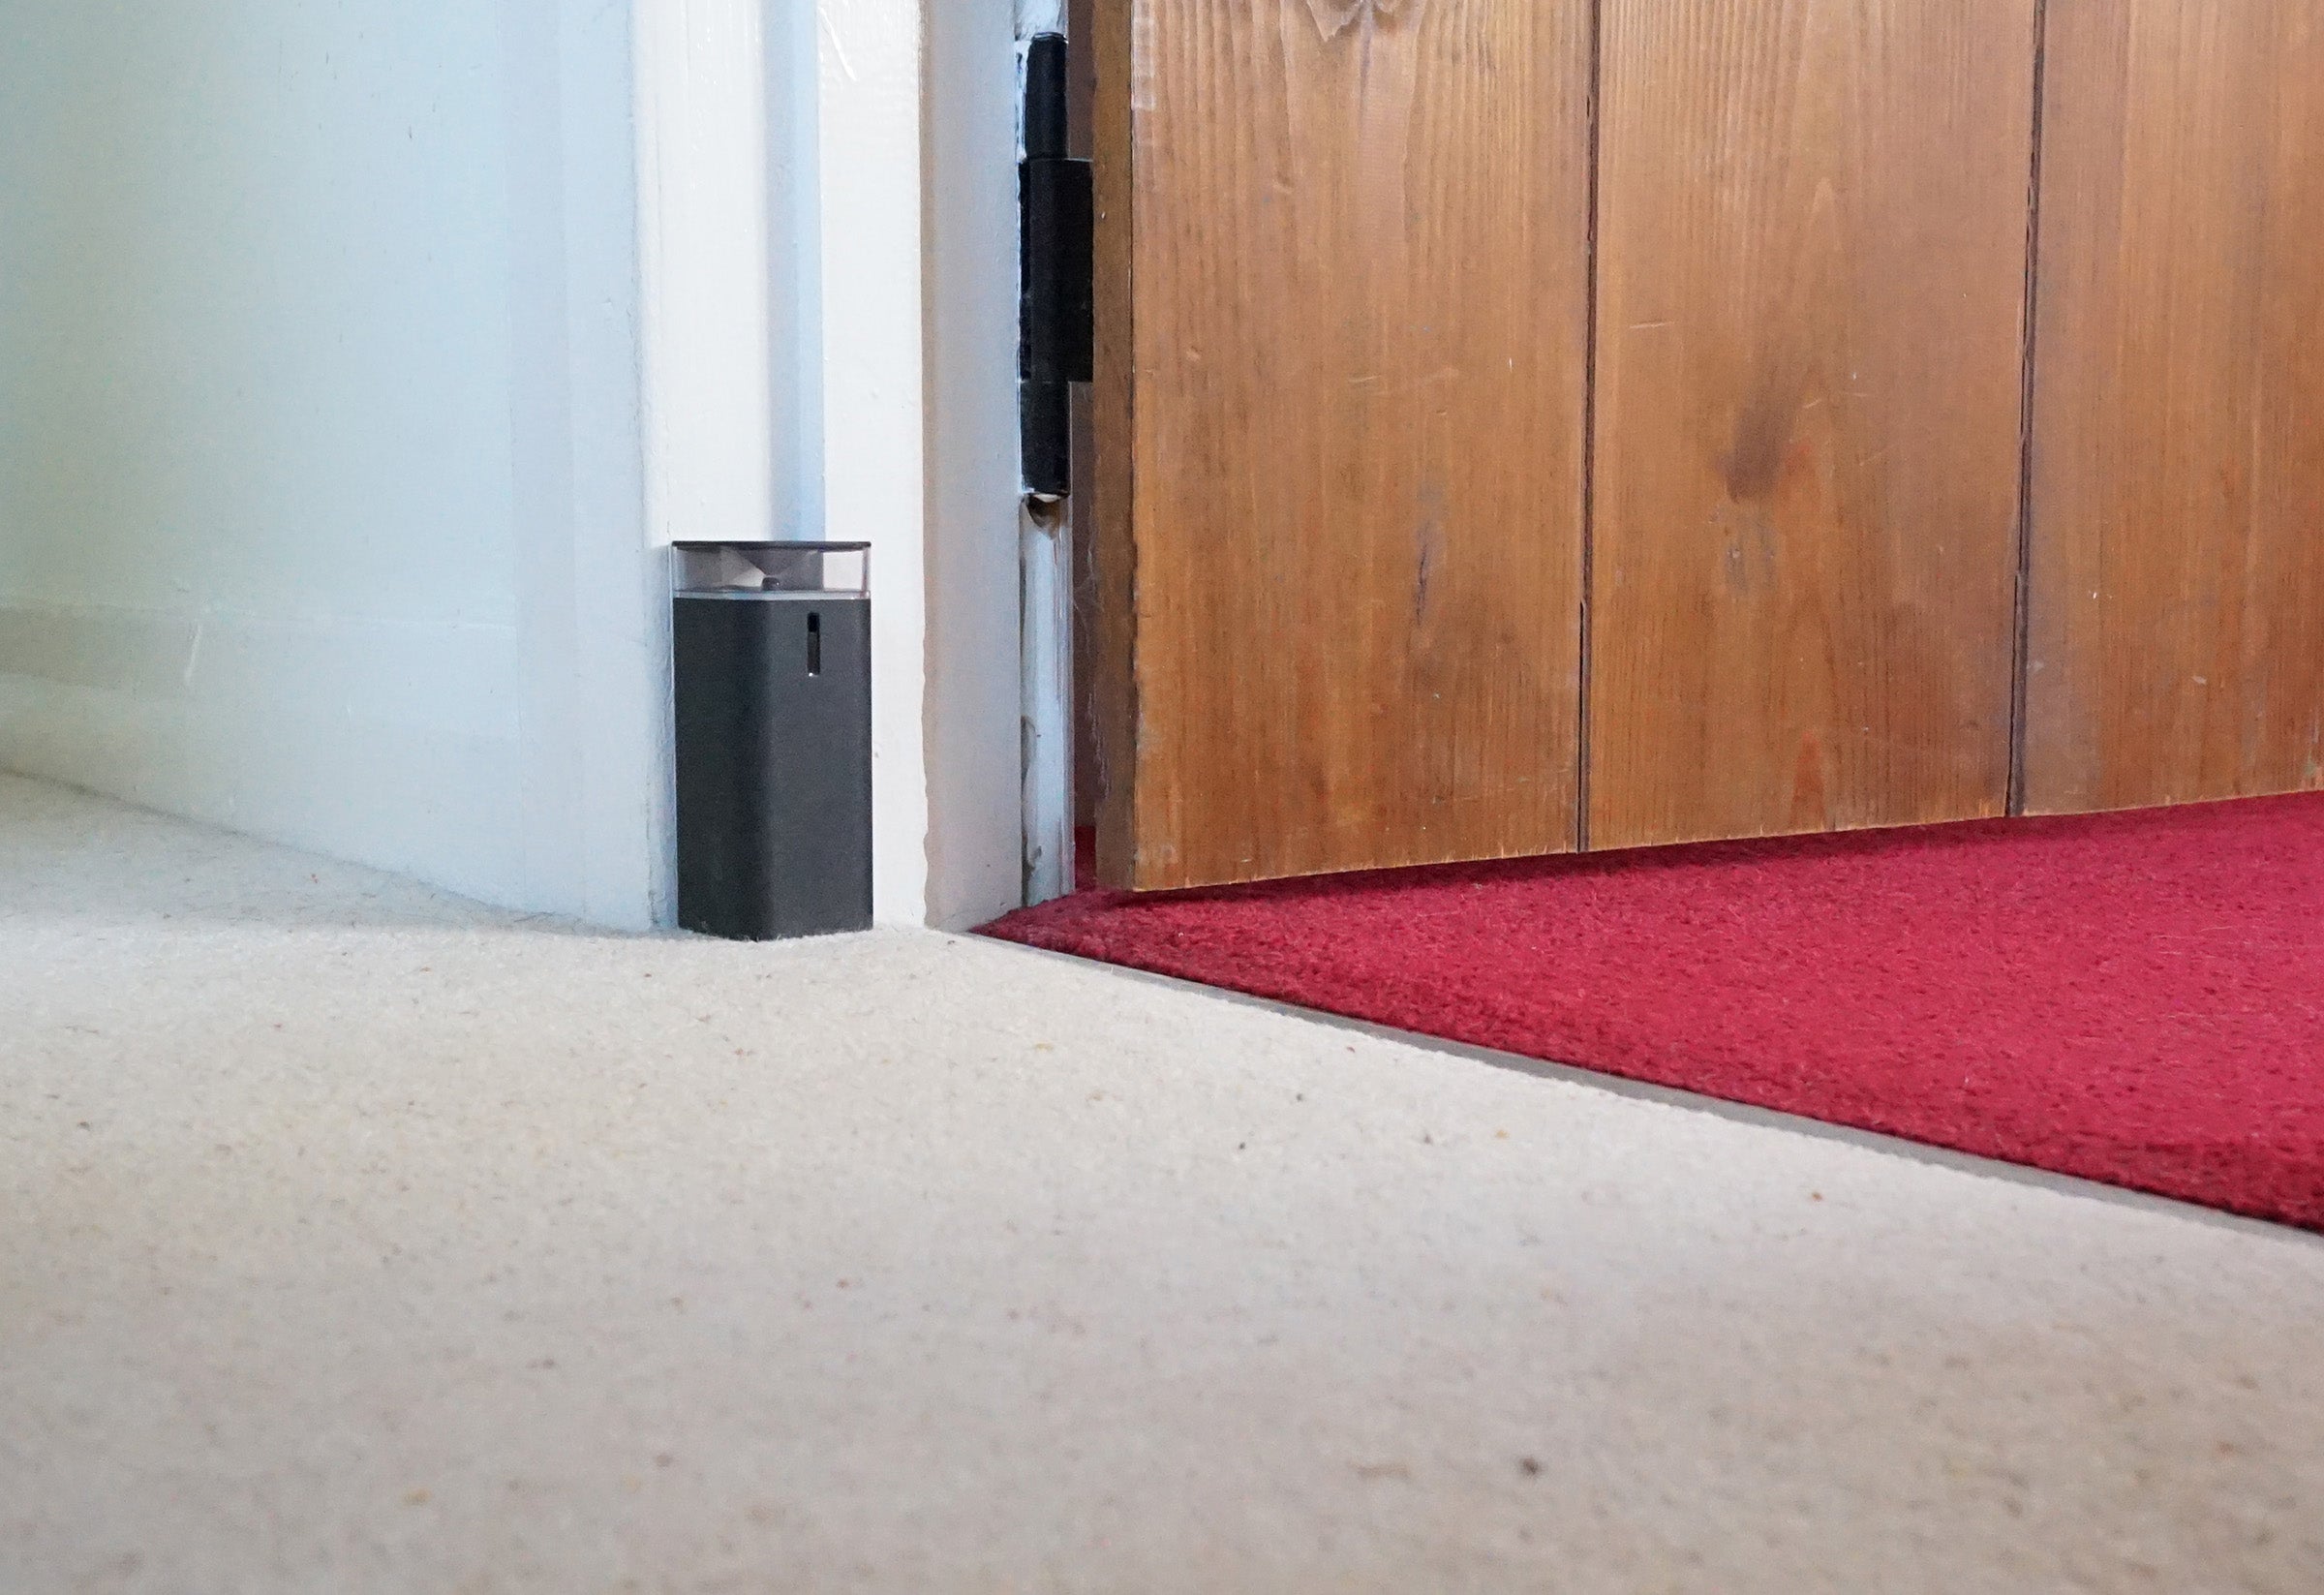 iRobot Roomba virtual wall barrier near a doorway